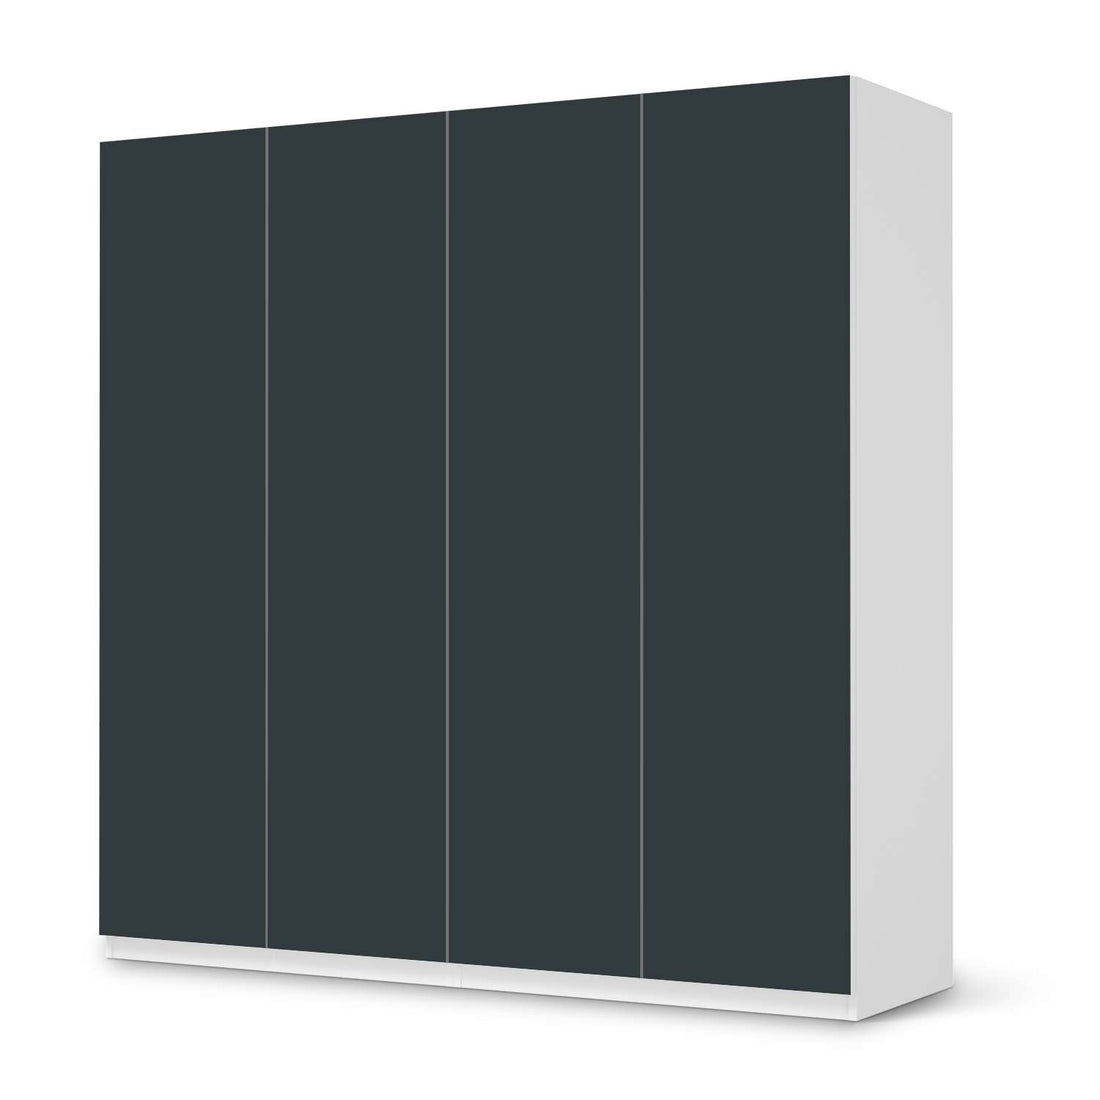 Klebefolie für Schränke Blaugrau Dark - IKEA Pax Schrank 201 cm Höhe - 4 Türen - weiss